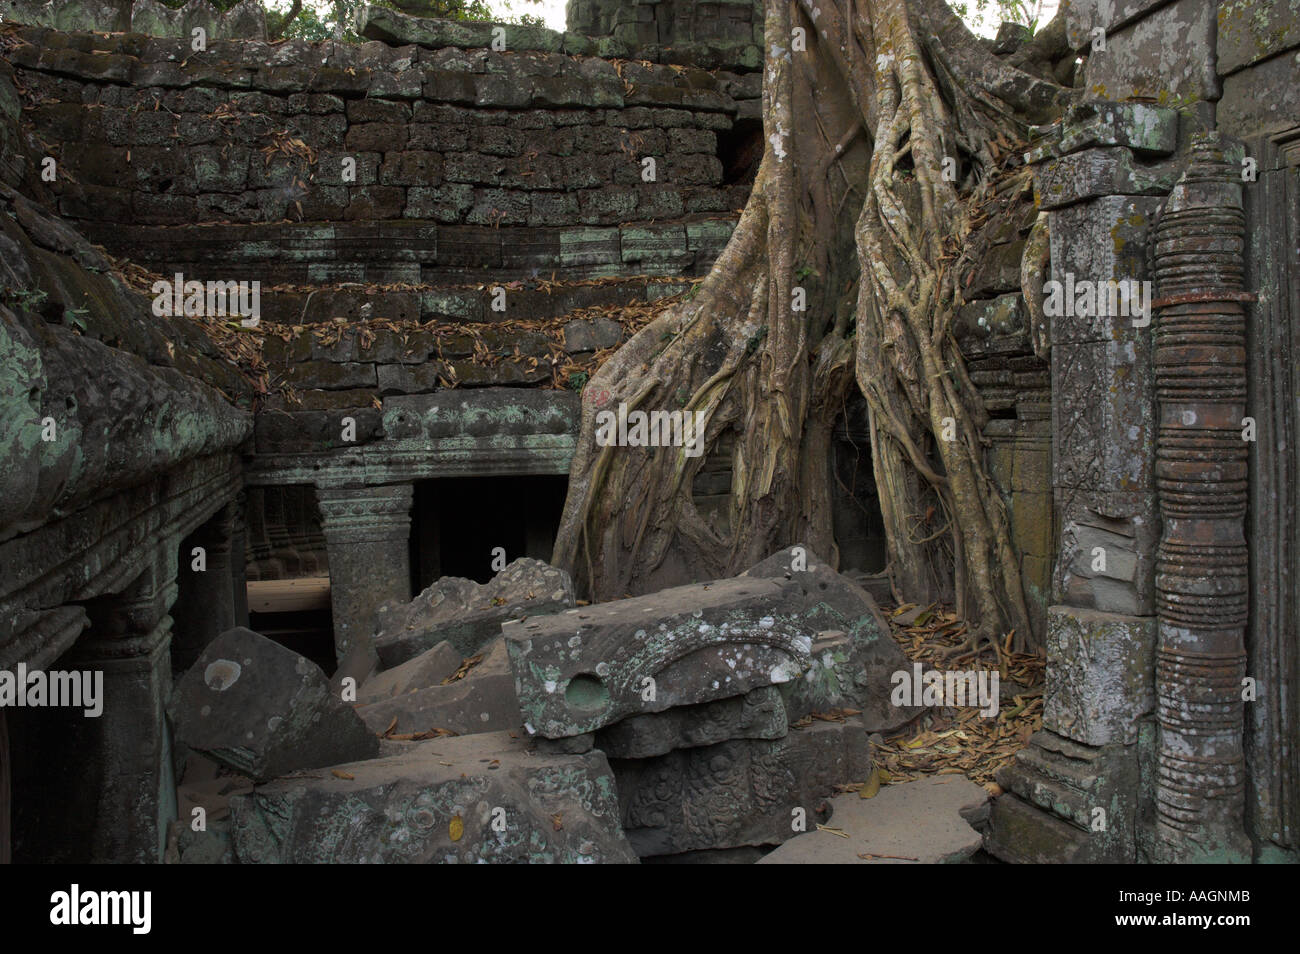 Kambodscha Siem Reap Provinz Tempeln von Angkor Archäologische Park Ta Prohm Tempel Innenhof mit erwachsen riesigen Baum Wurzeln Stockfoto